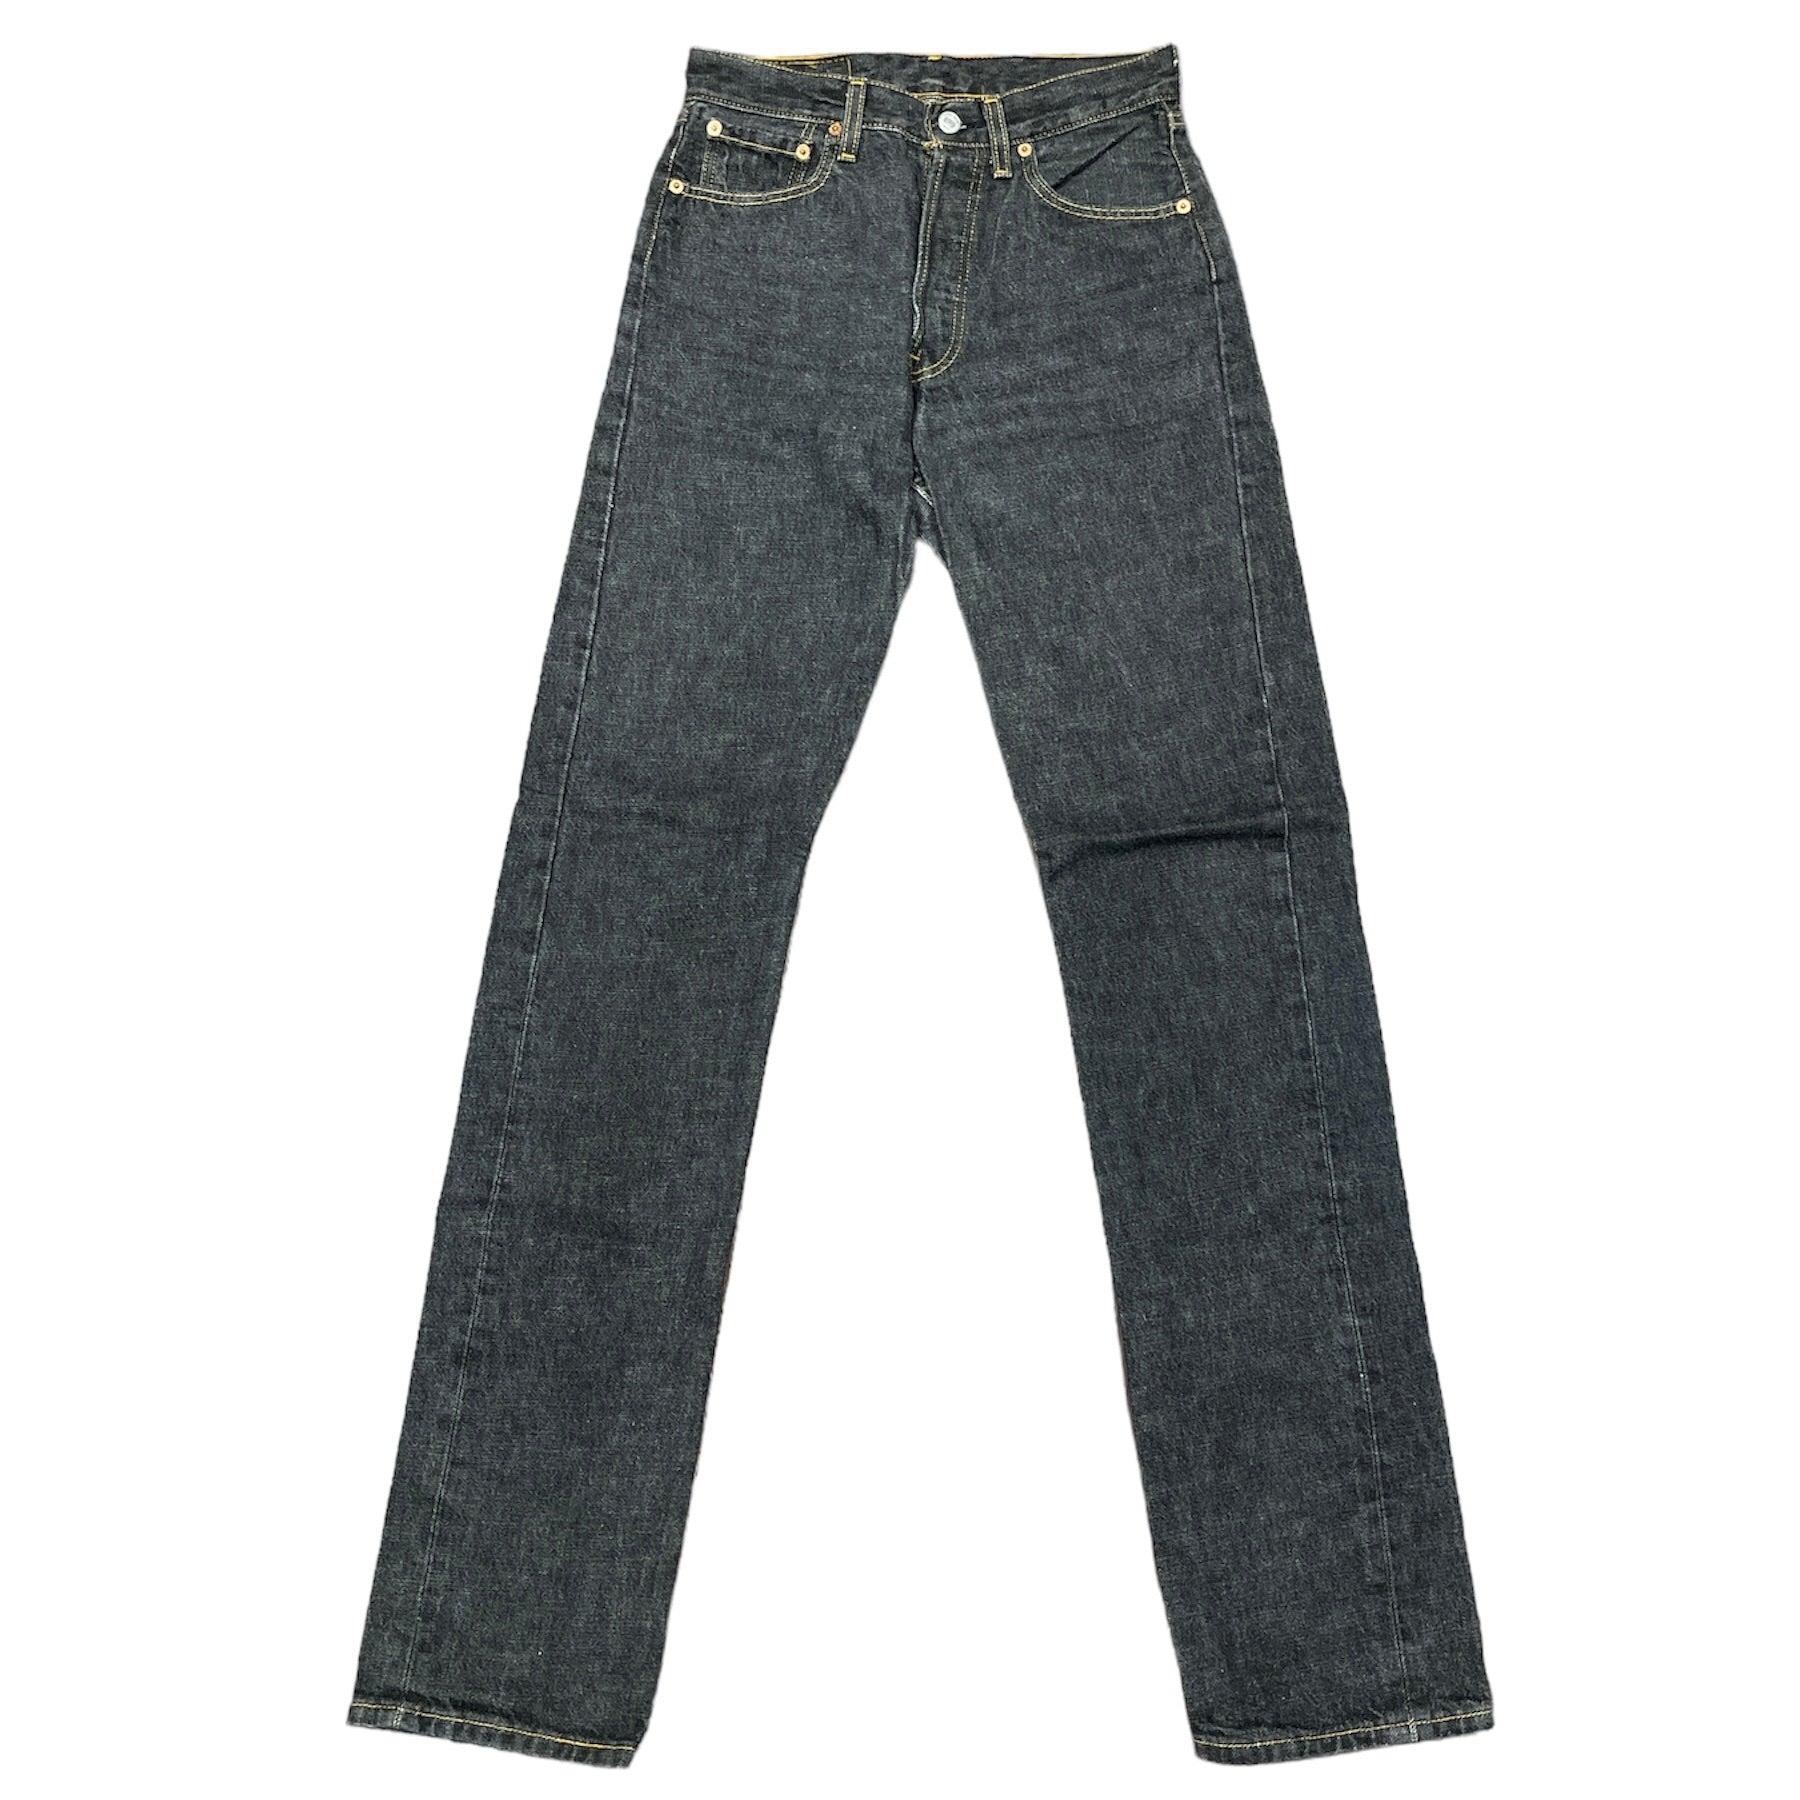 Vintage Levis 501 Black/Grey Jeans (W28/L36)